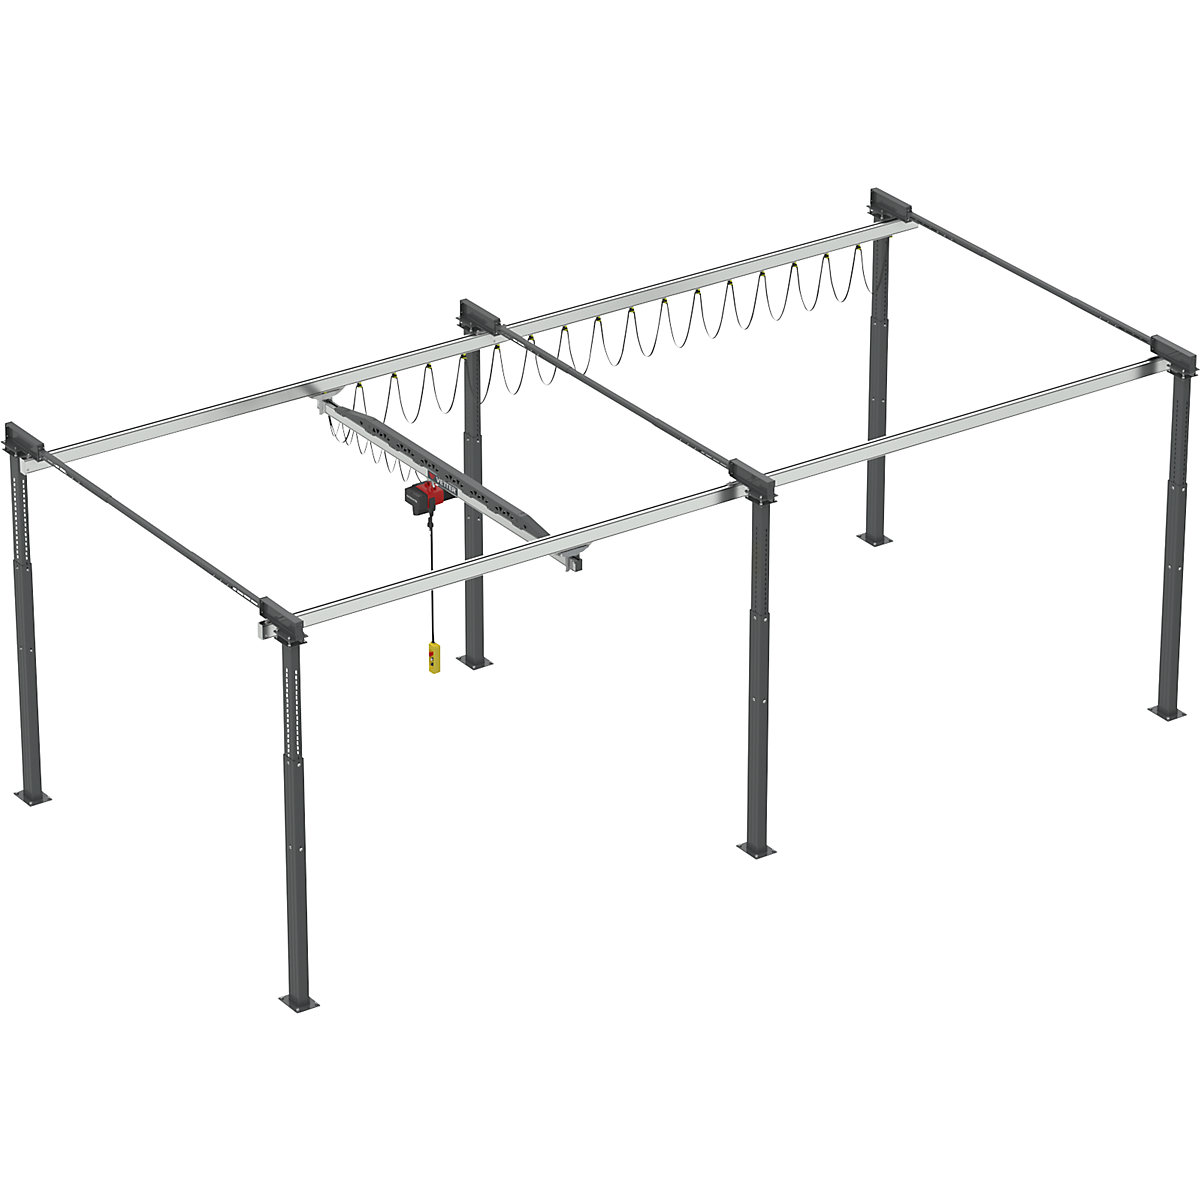 ErgoLine® gantry crane system – Vetter